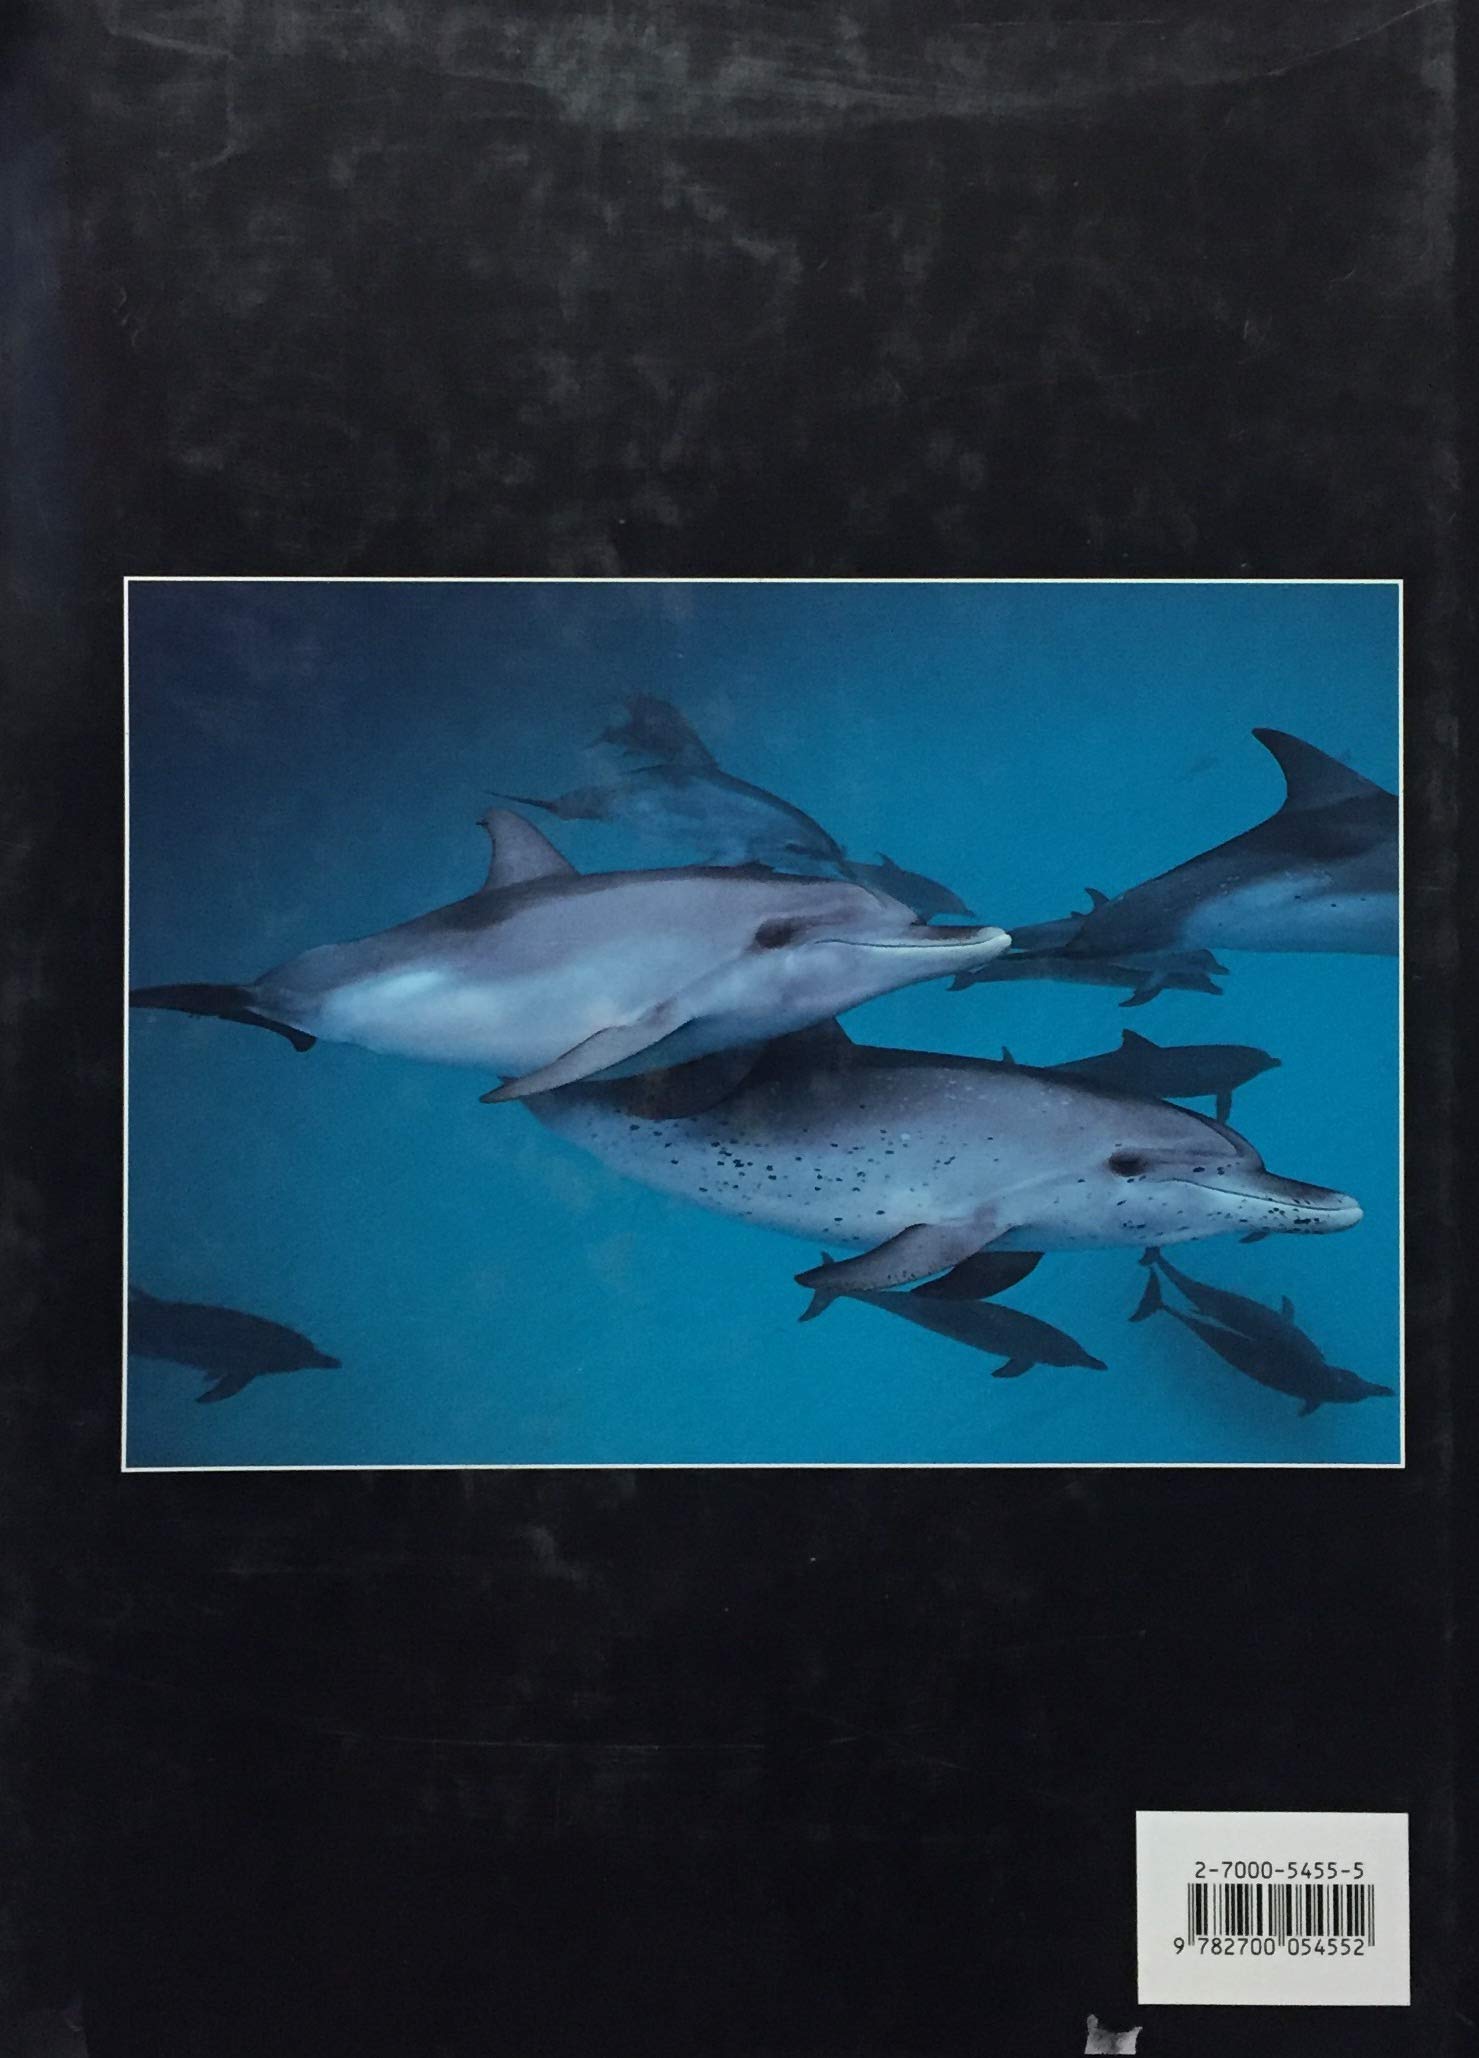 Géants de la mer : baleines, orques et dauphins (Gaetano Cafiero)